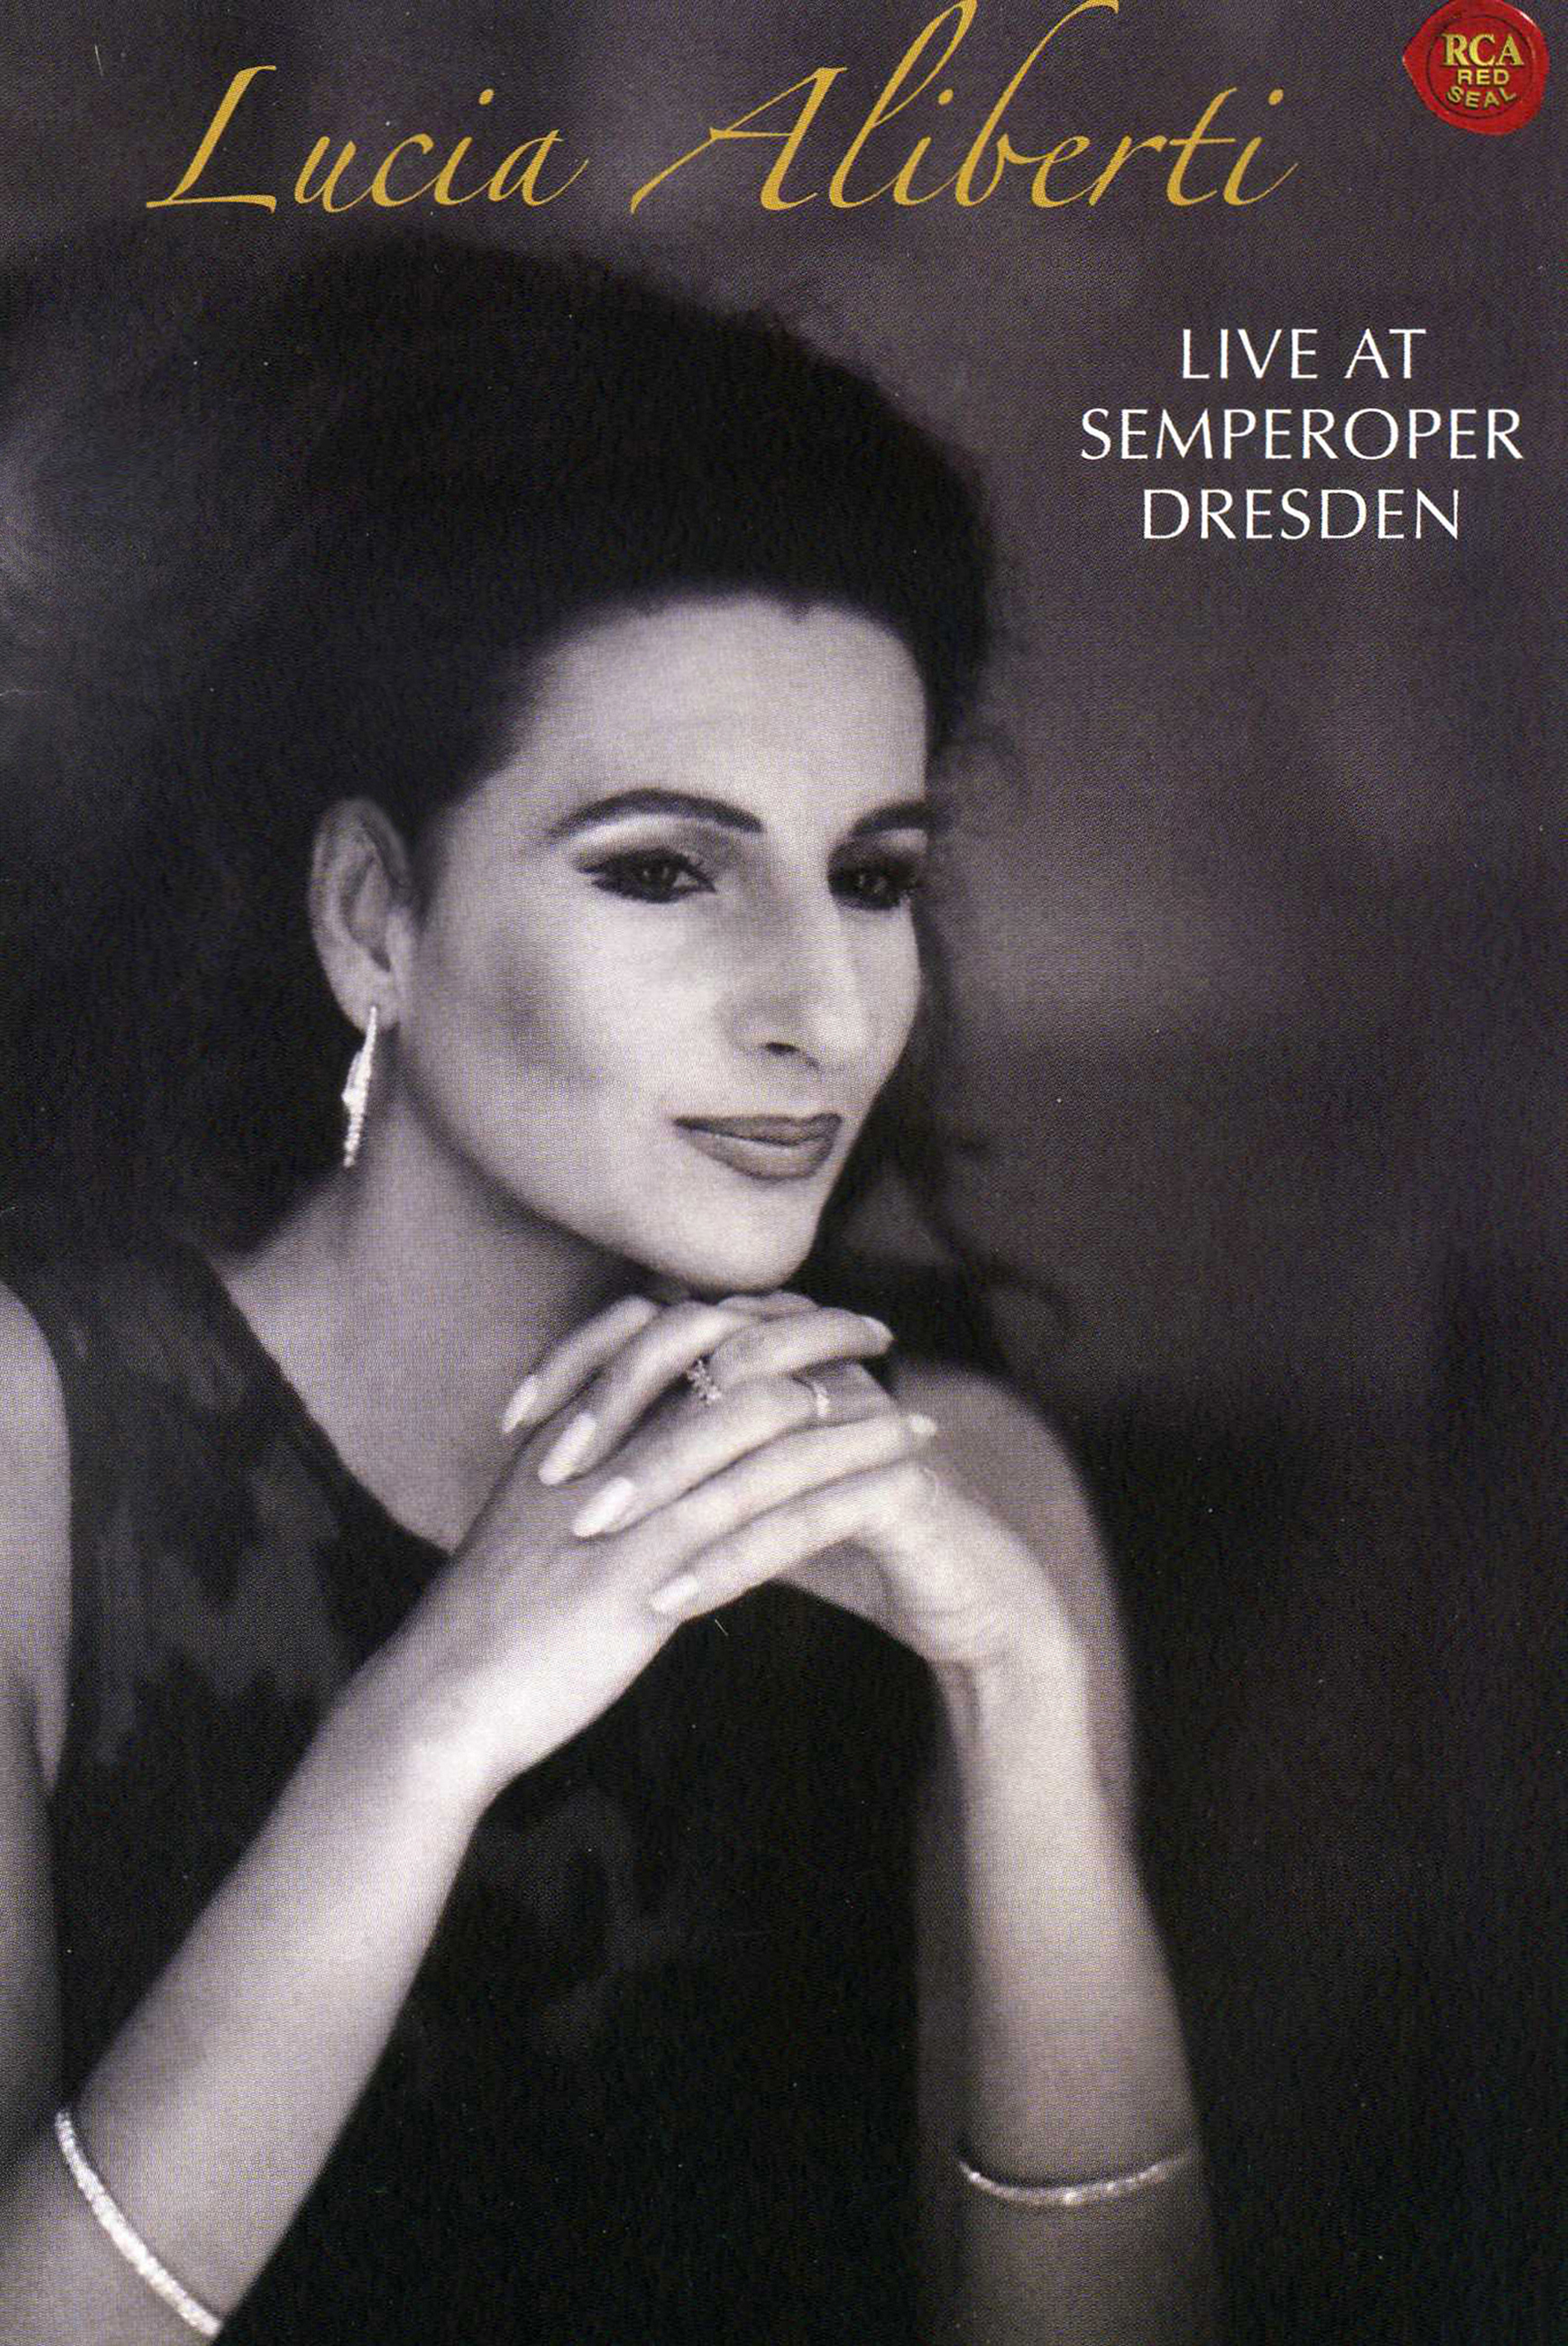 Lucia Aliberti ⚘Concert⚘Live Semperoper Dresden⚘Live DVD Recording⚘Sony BMG⚘Music Entertainment⚘:http://www.luciaaliberti.it #luciaaliberti #livesemperoperdresden #concert #livedvdrecording #sonybmg